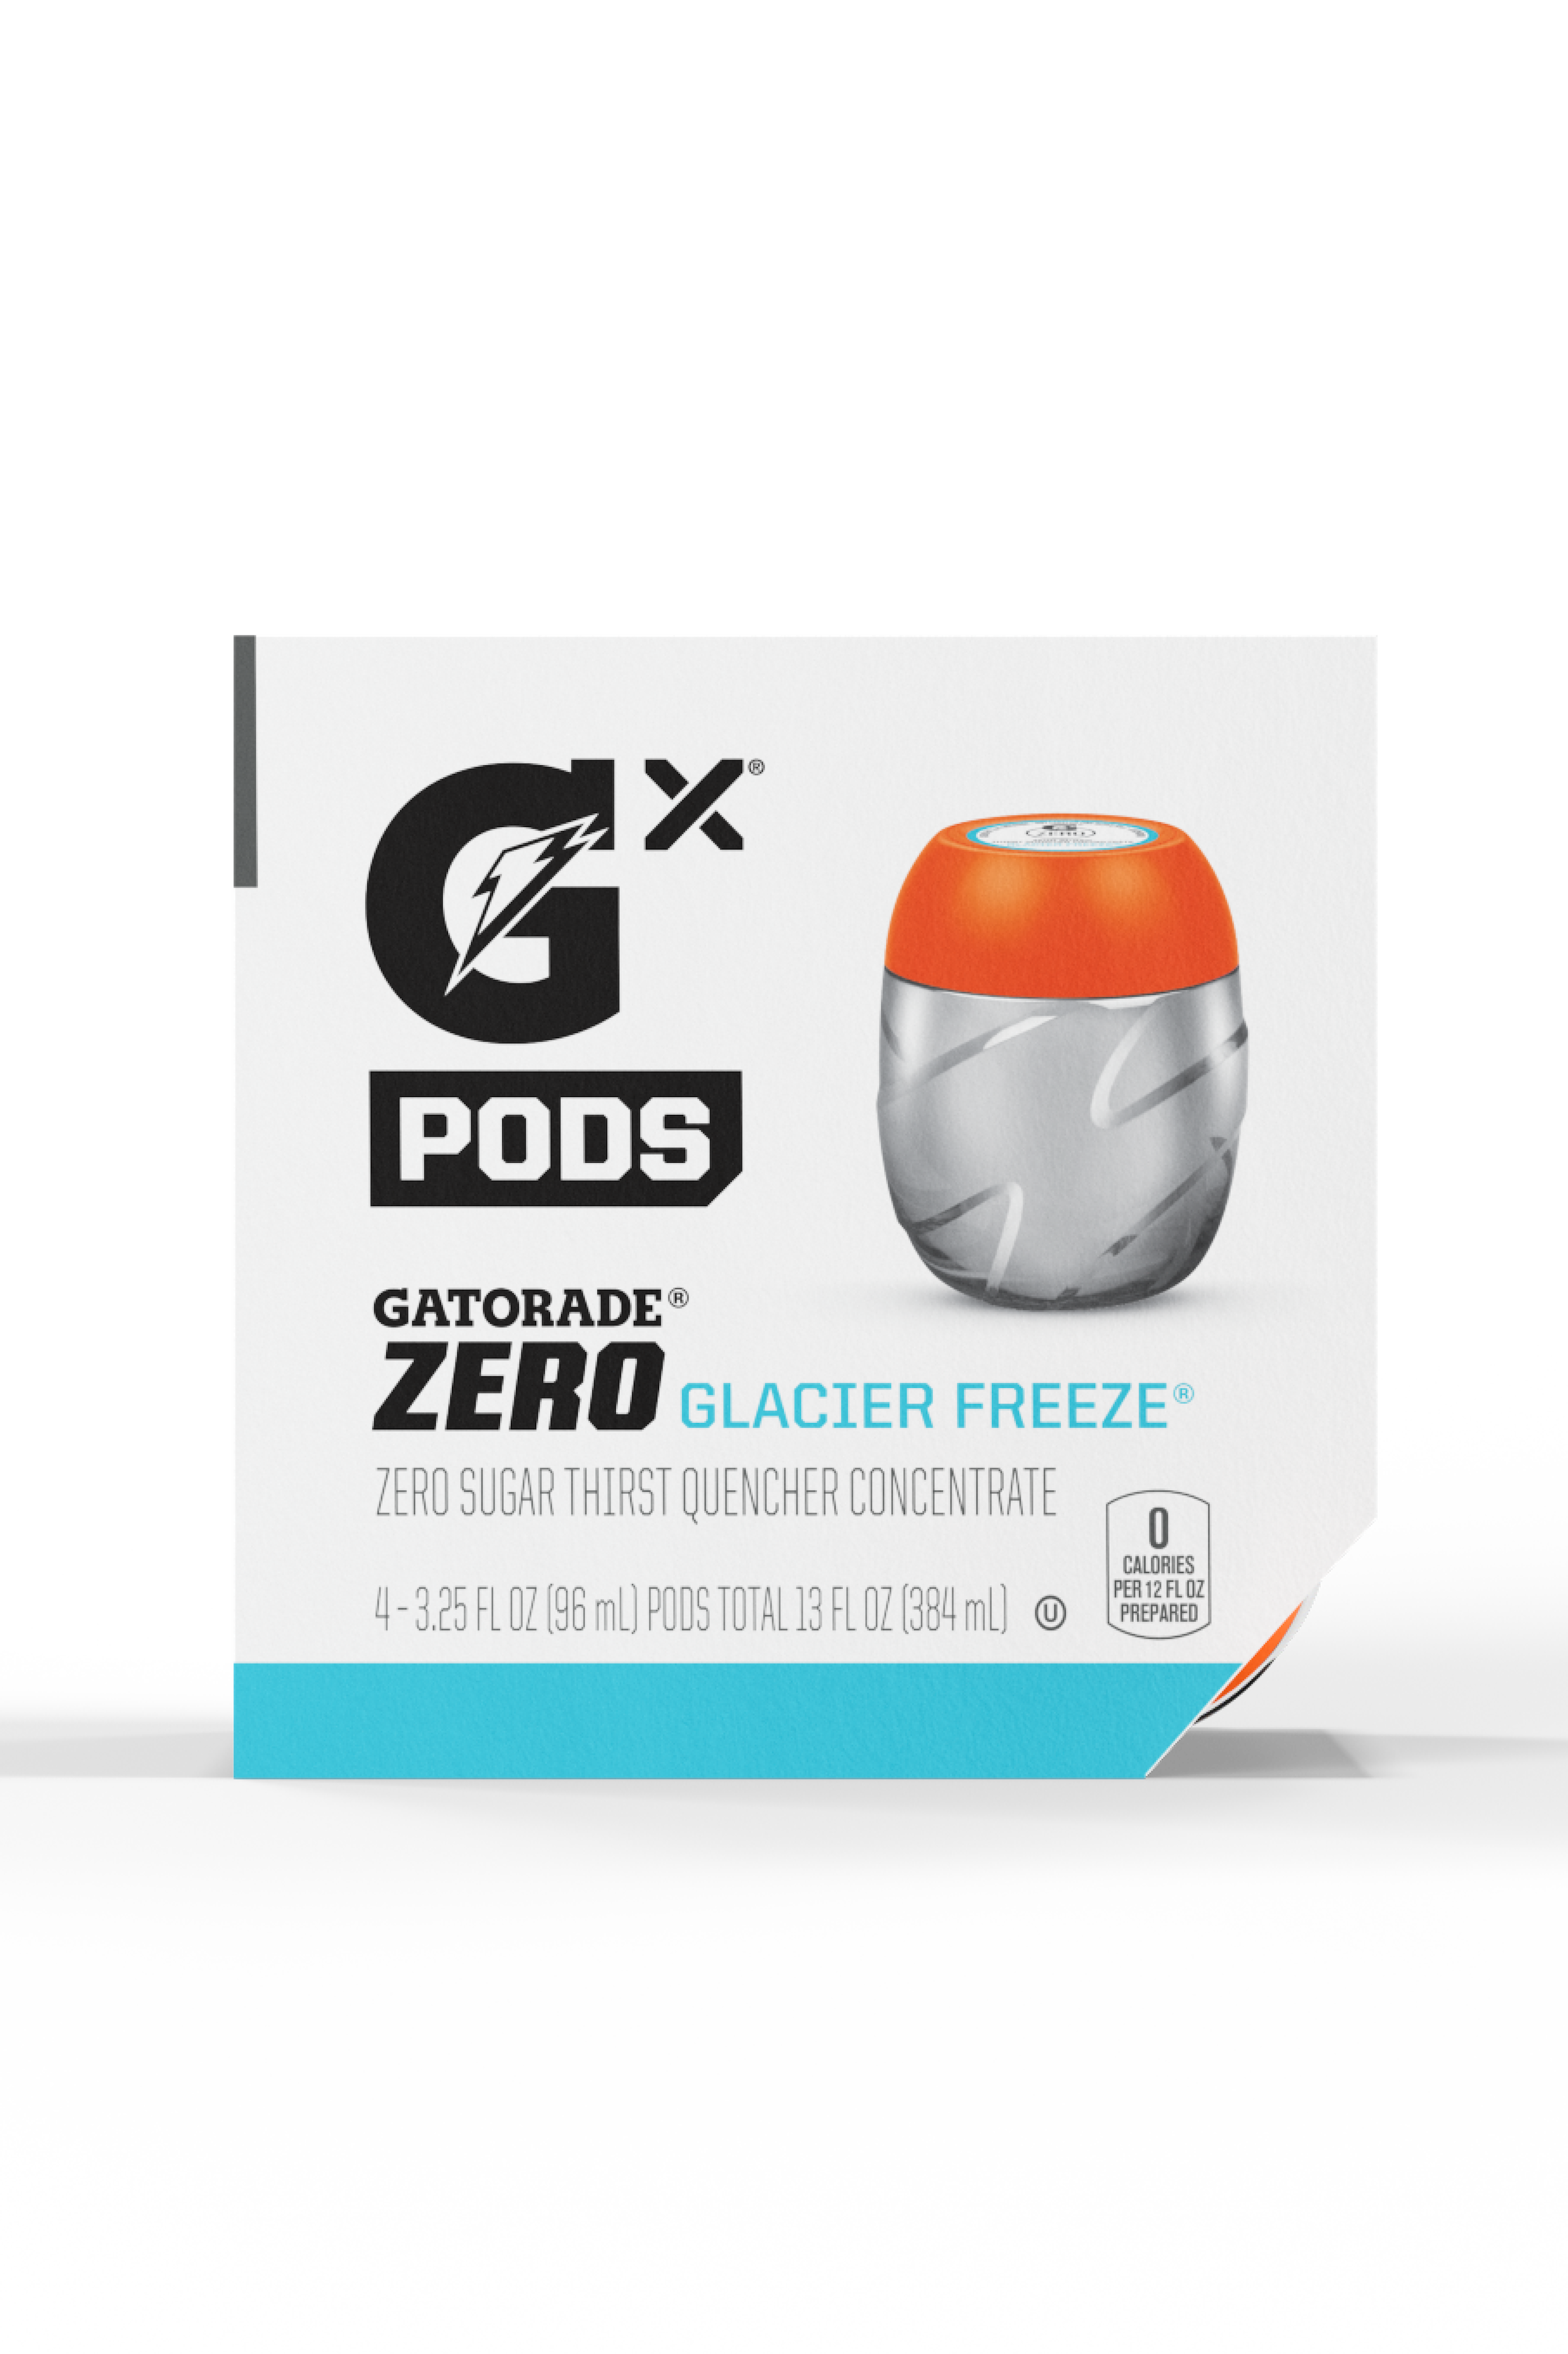 Glacier Freeze Gatorade Zero Pods box